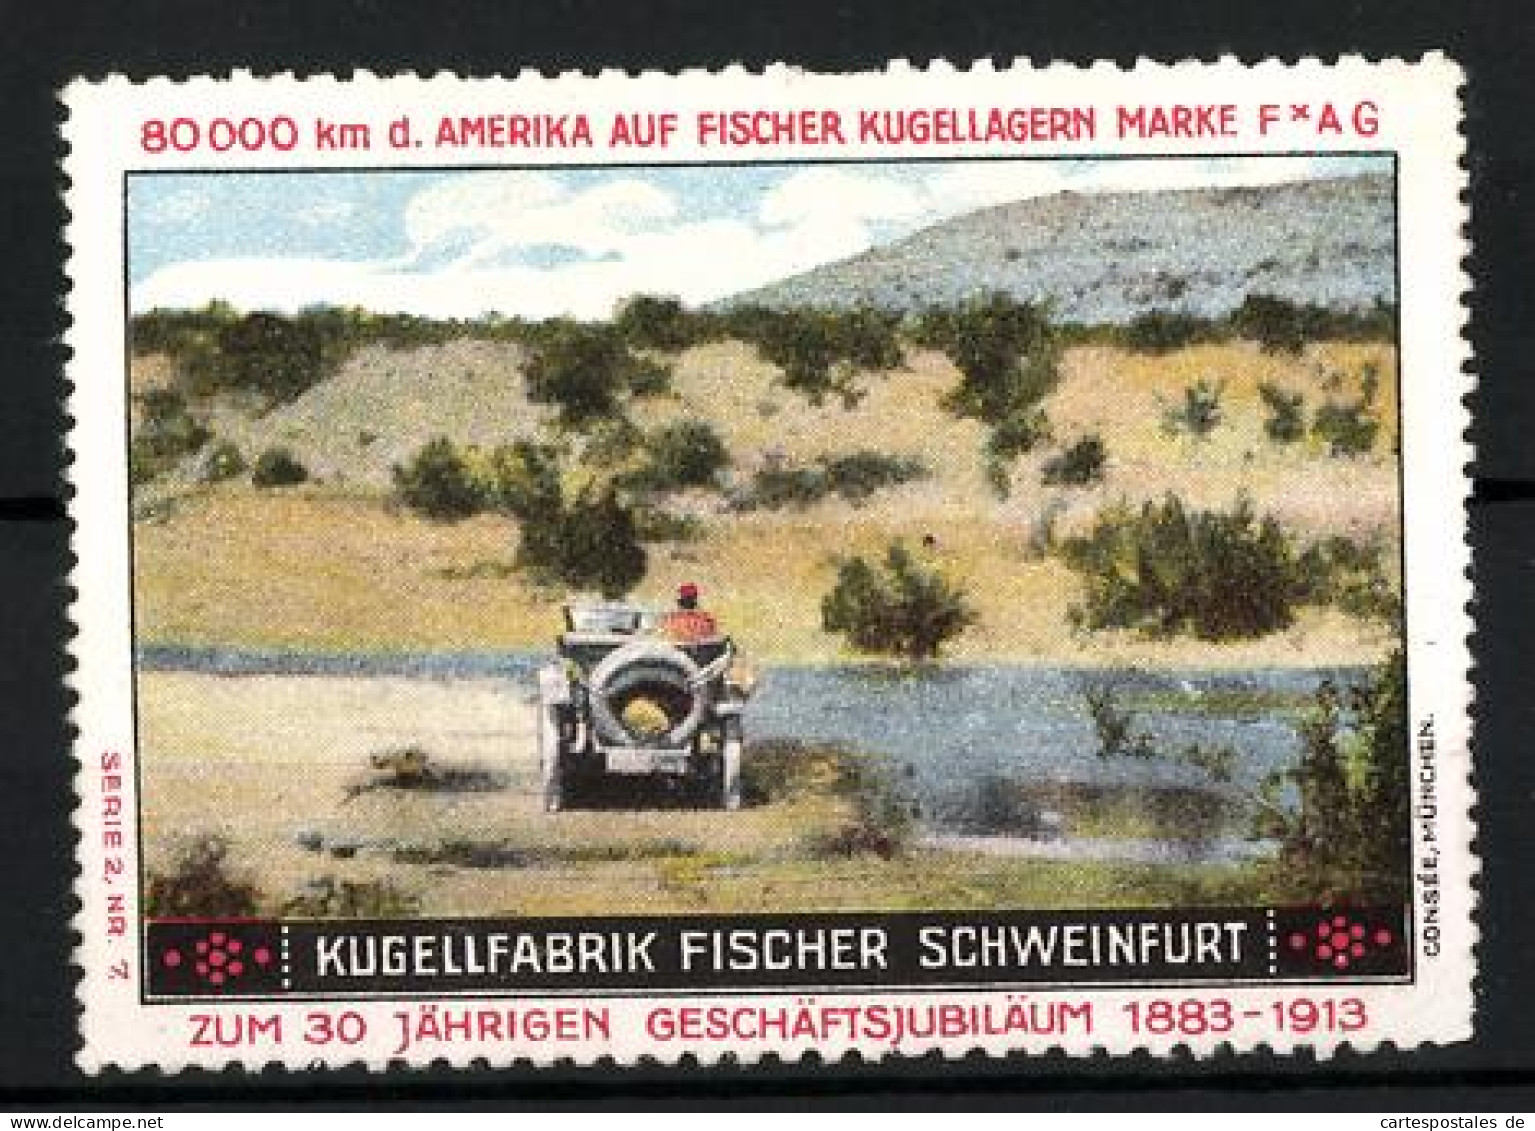 Reklamemarke Fischer Kugellager FAG, Kugellfabrik Fischer Schweinfurt, 30 Jähr. Geschäftsjubiläum 1883-1913, Auto  - Erinnofilie